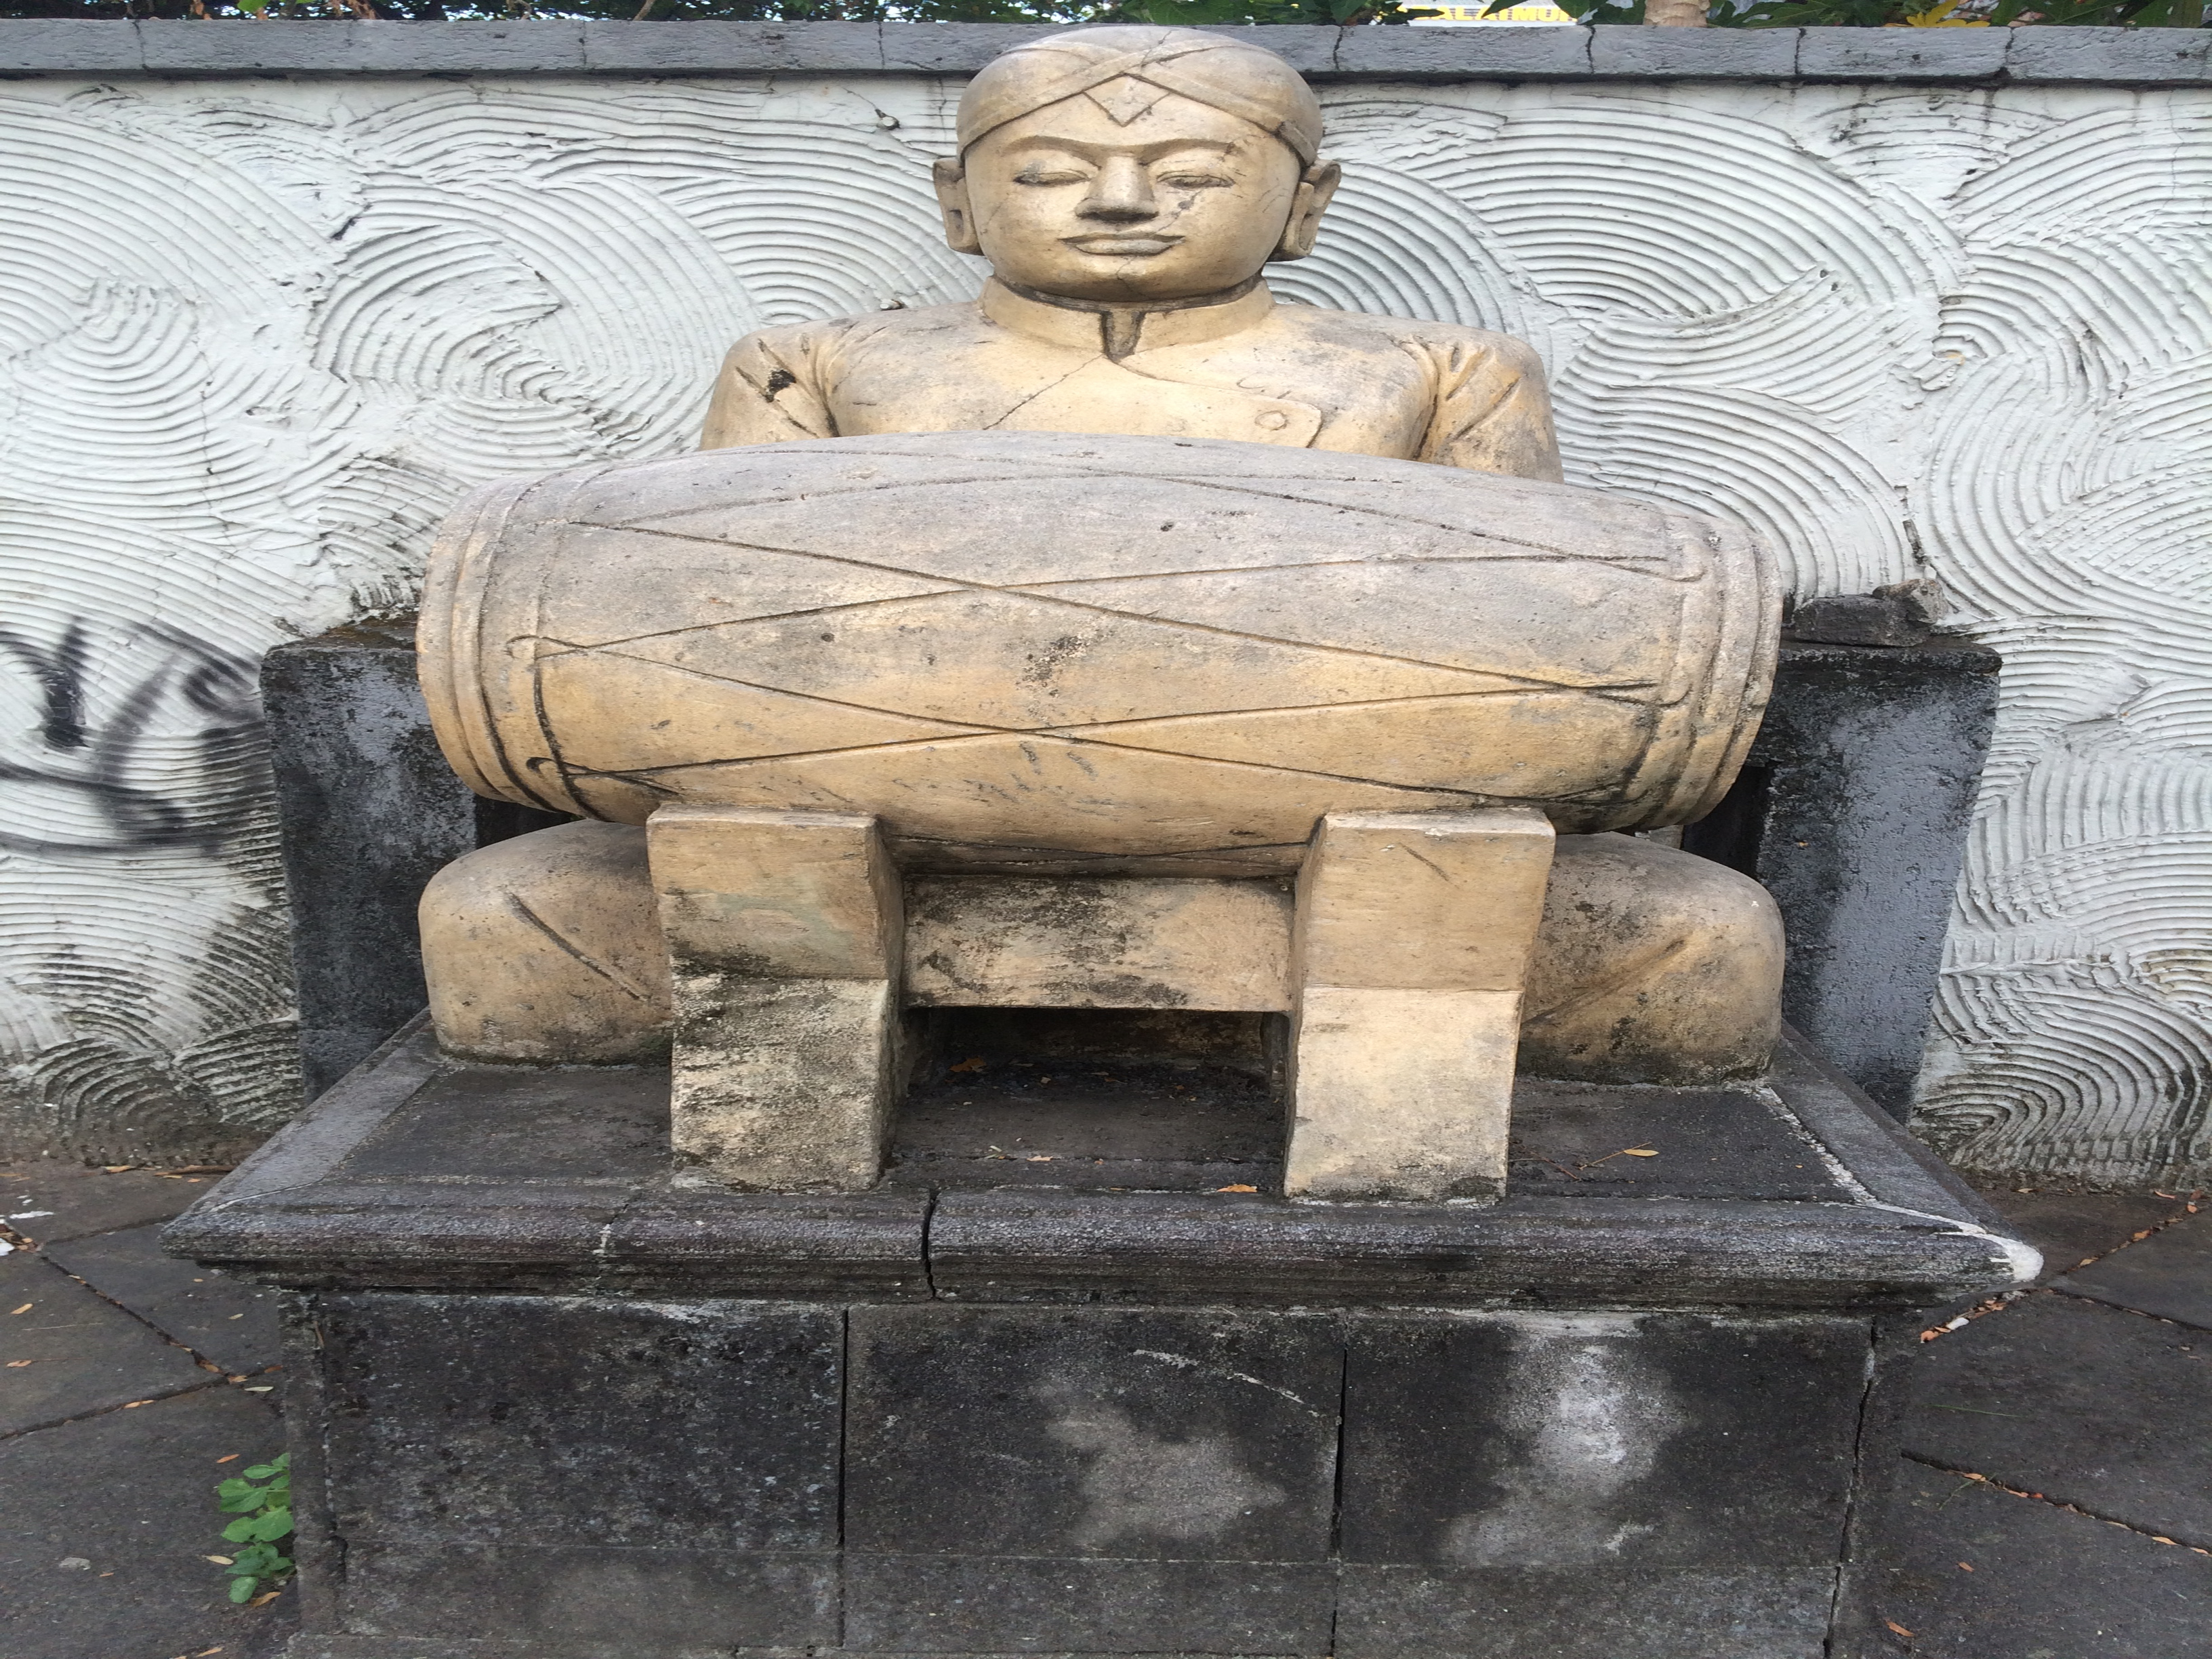 Sculpture of a man playing kendang.